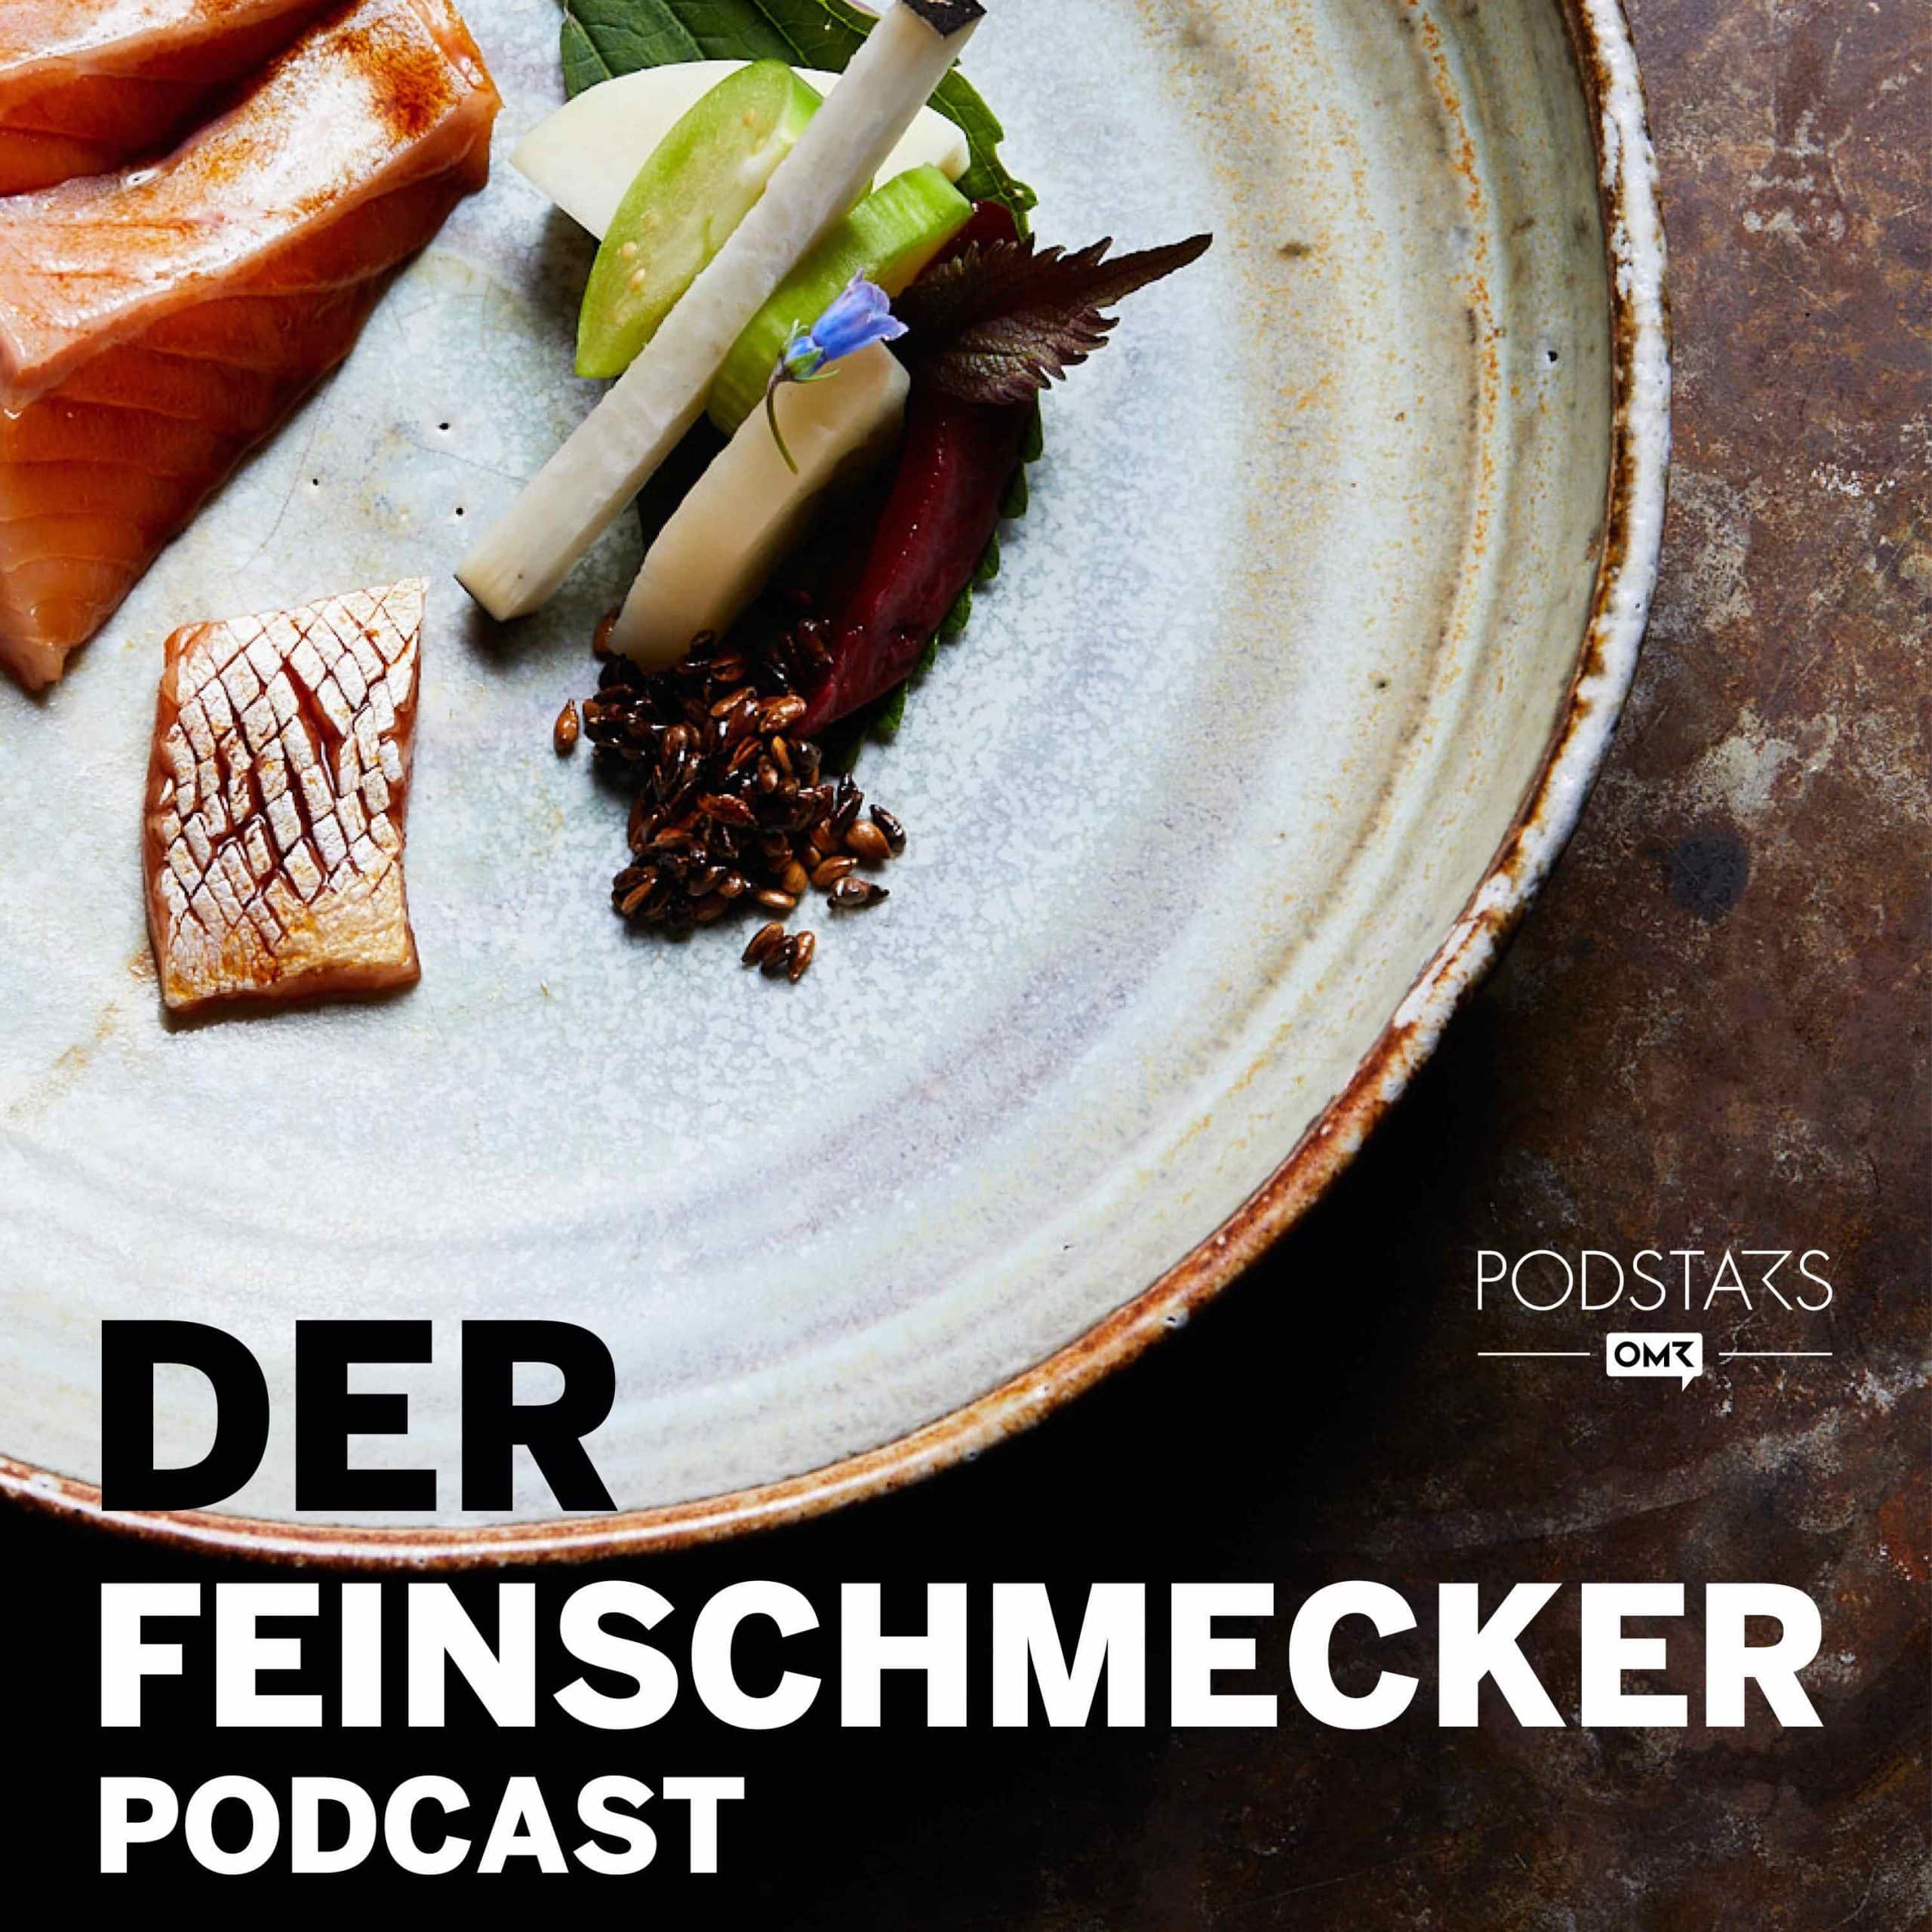 Der Feinschmecker Podcast